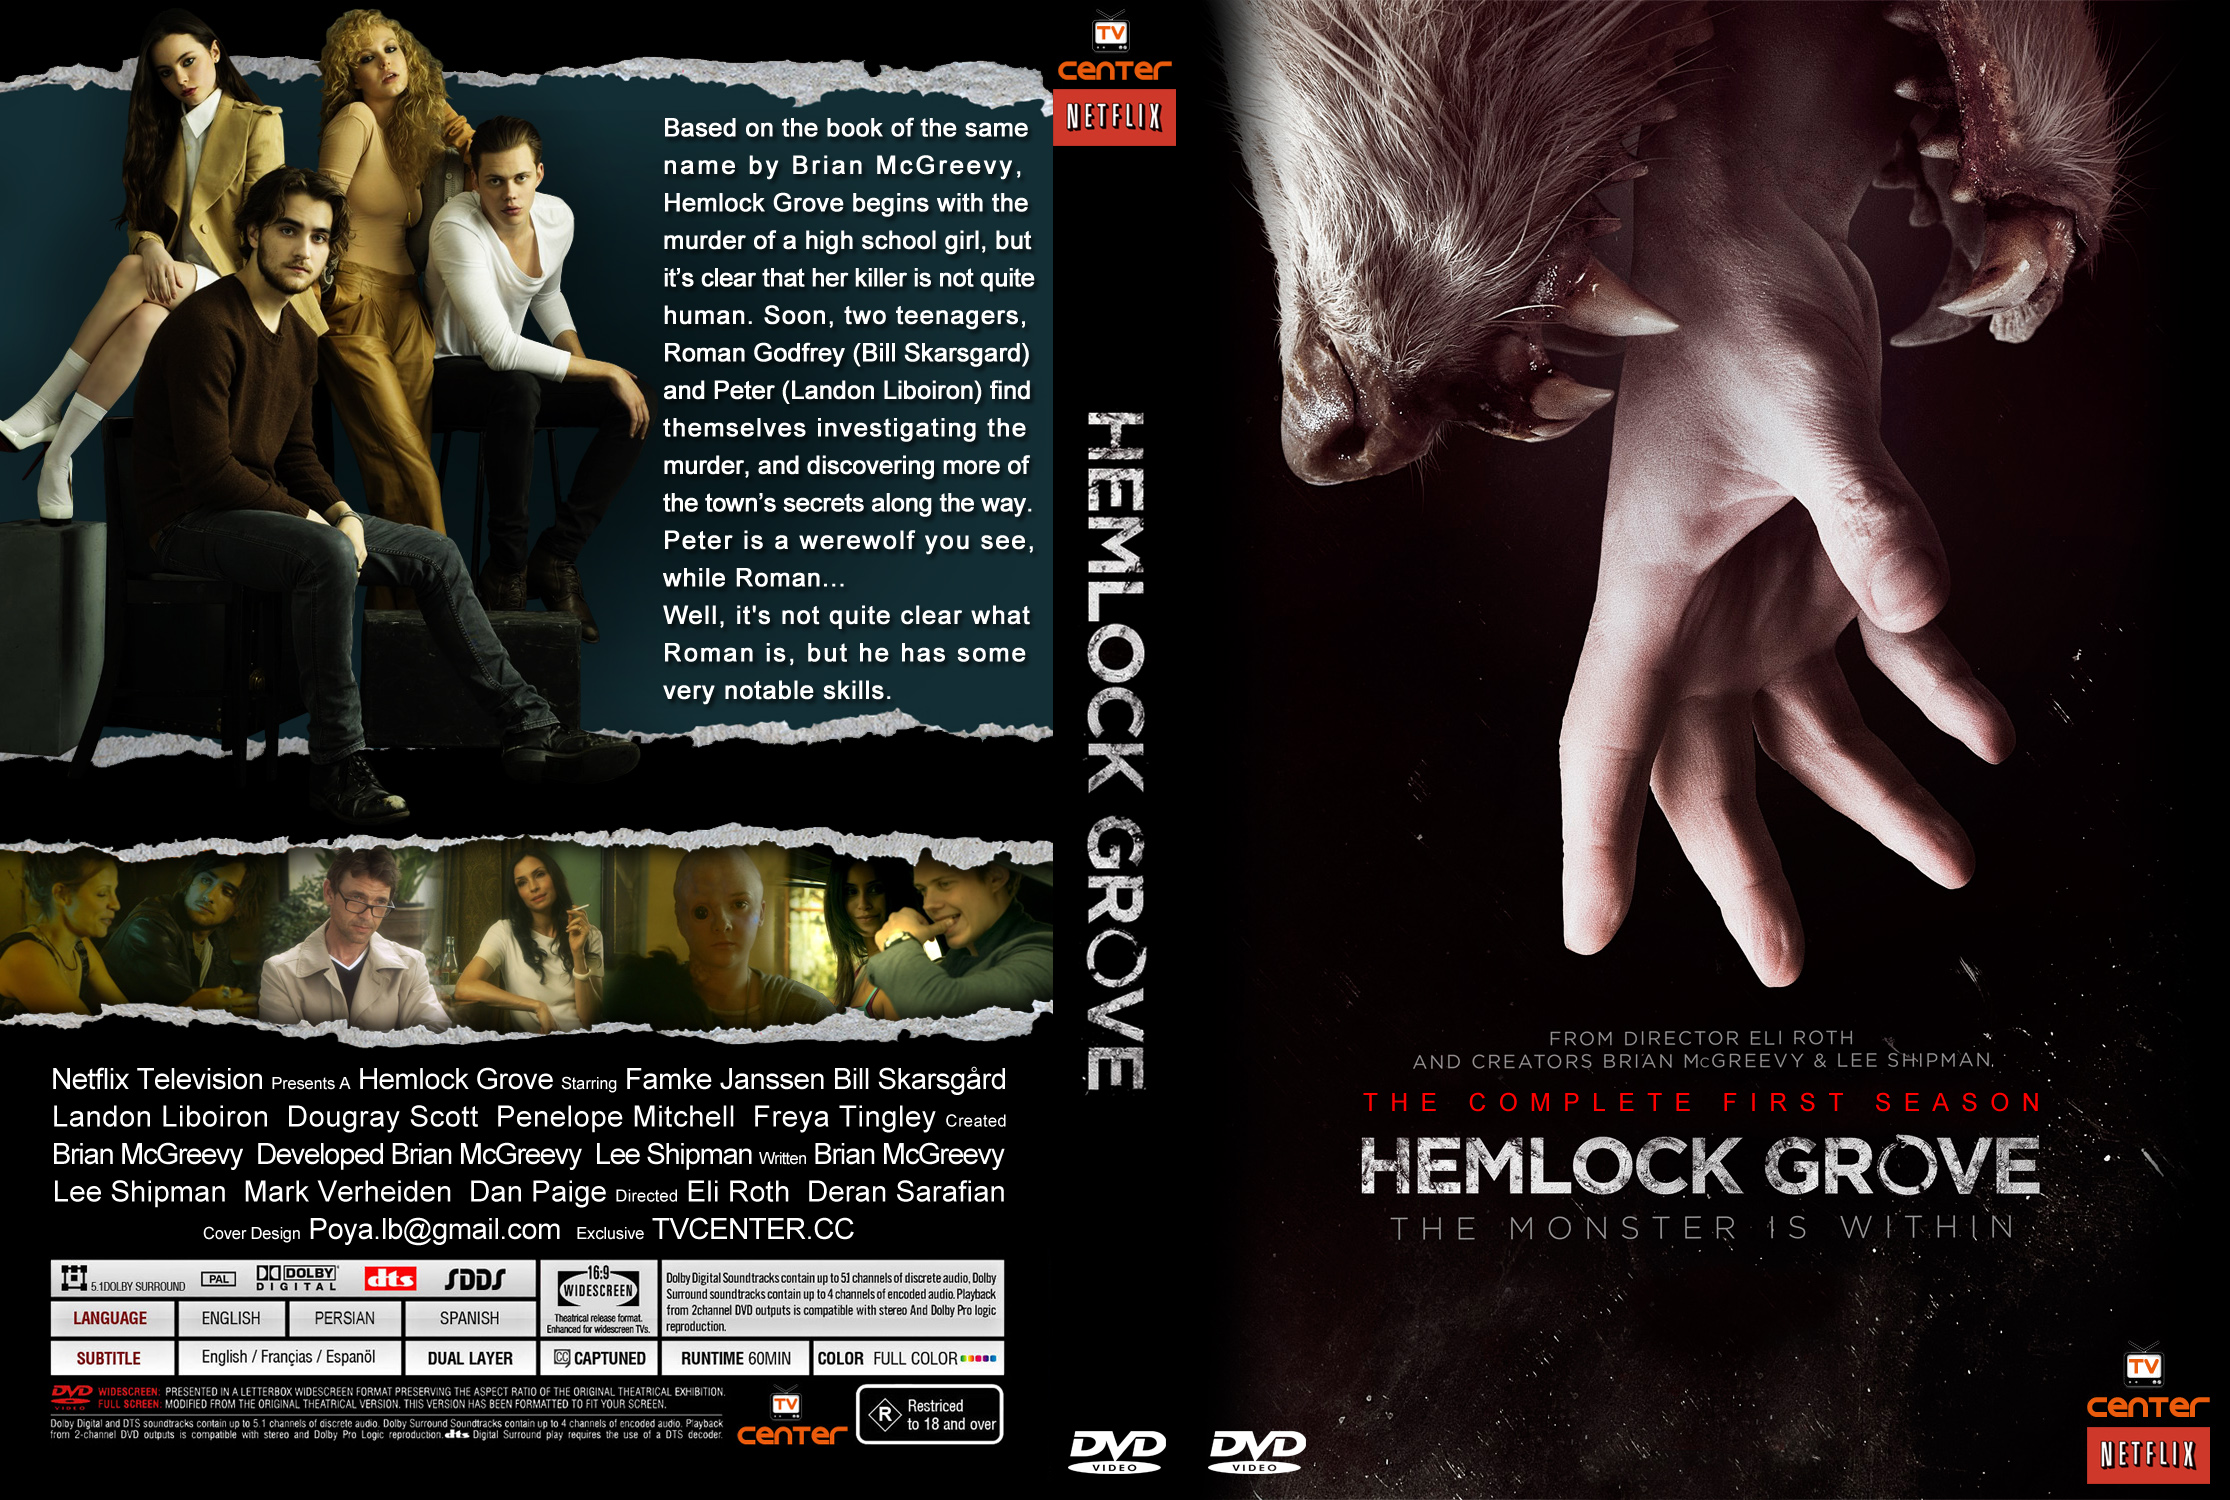 Hemlock grove dvd